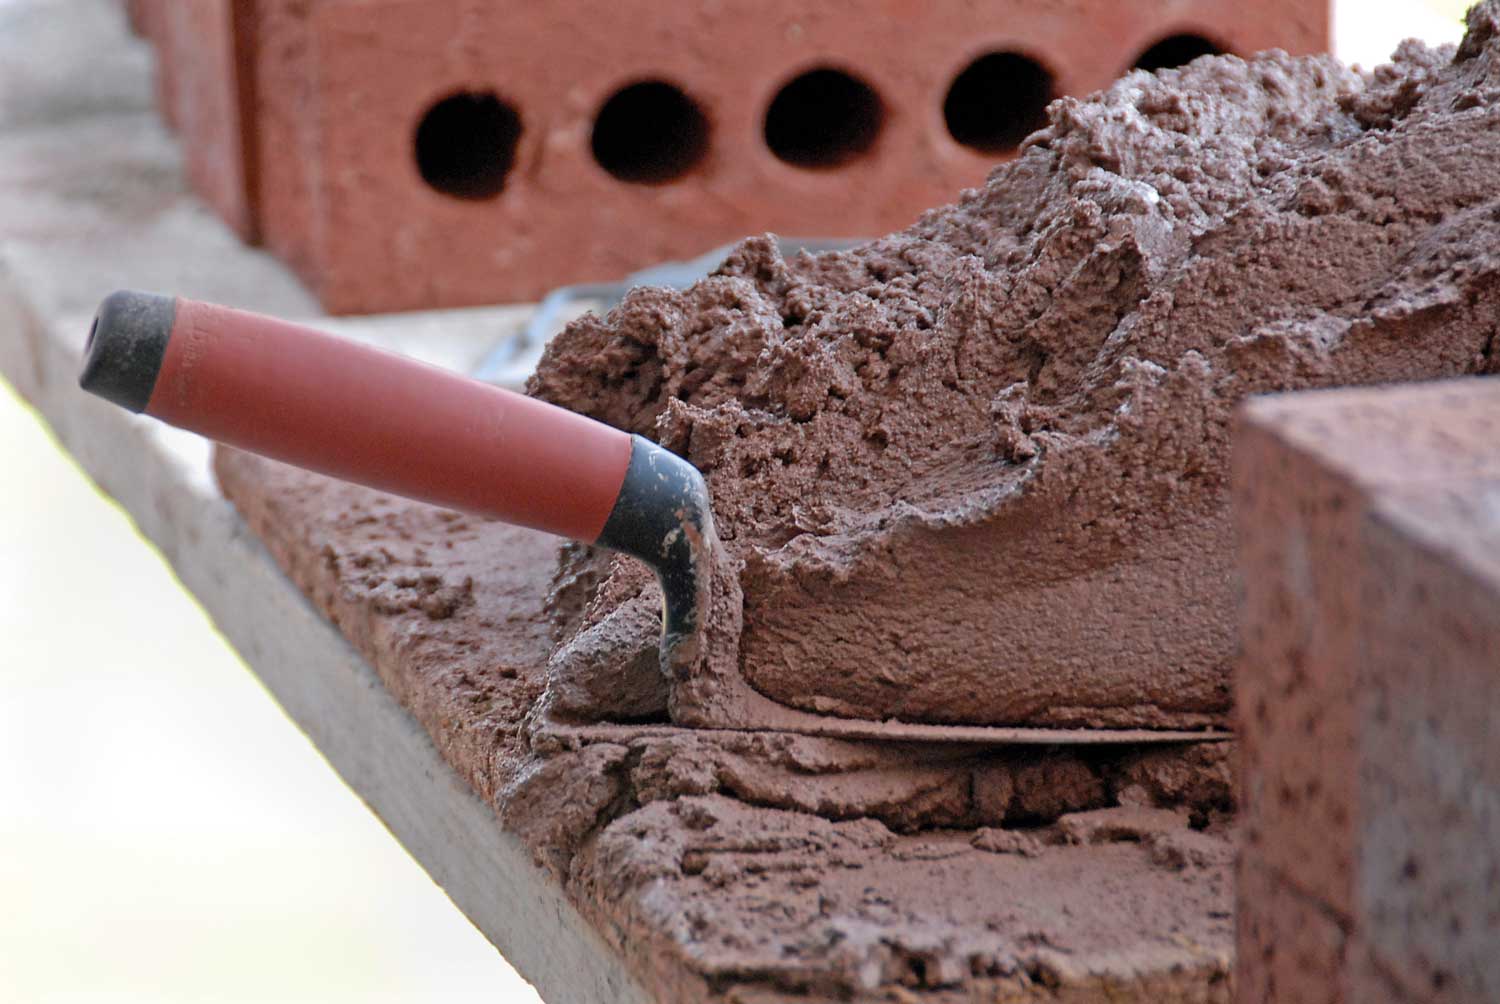 Цемент в мешках: расфасовка, применение в строительстве, плюсы и минусы